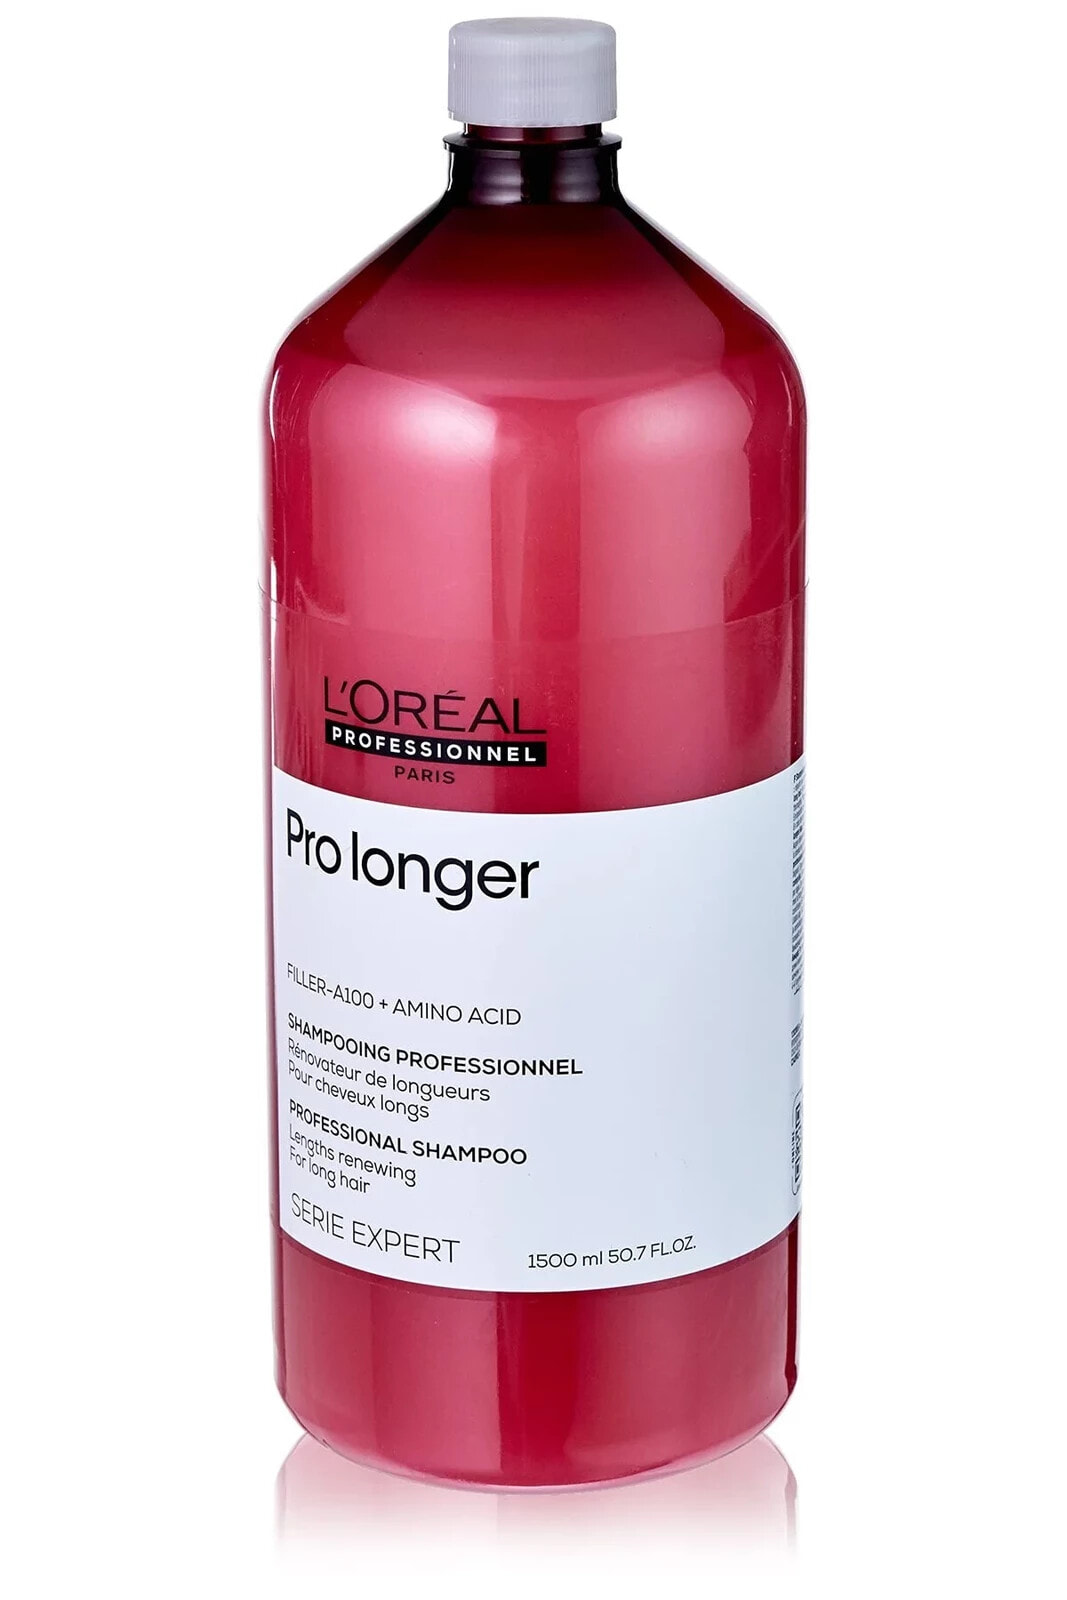 Loreal Paris Pro Longer-İncelmiş Saç Boylarını Yenileyici-Güçlendirici Şampuan1500 ml CYT64694313193